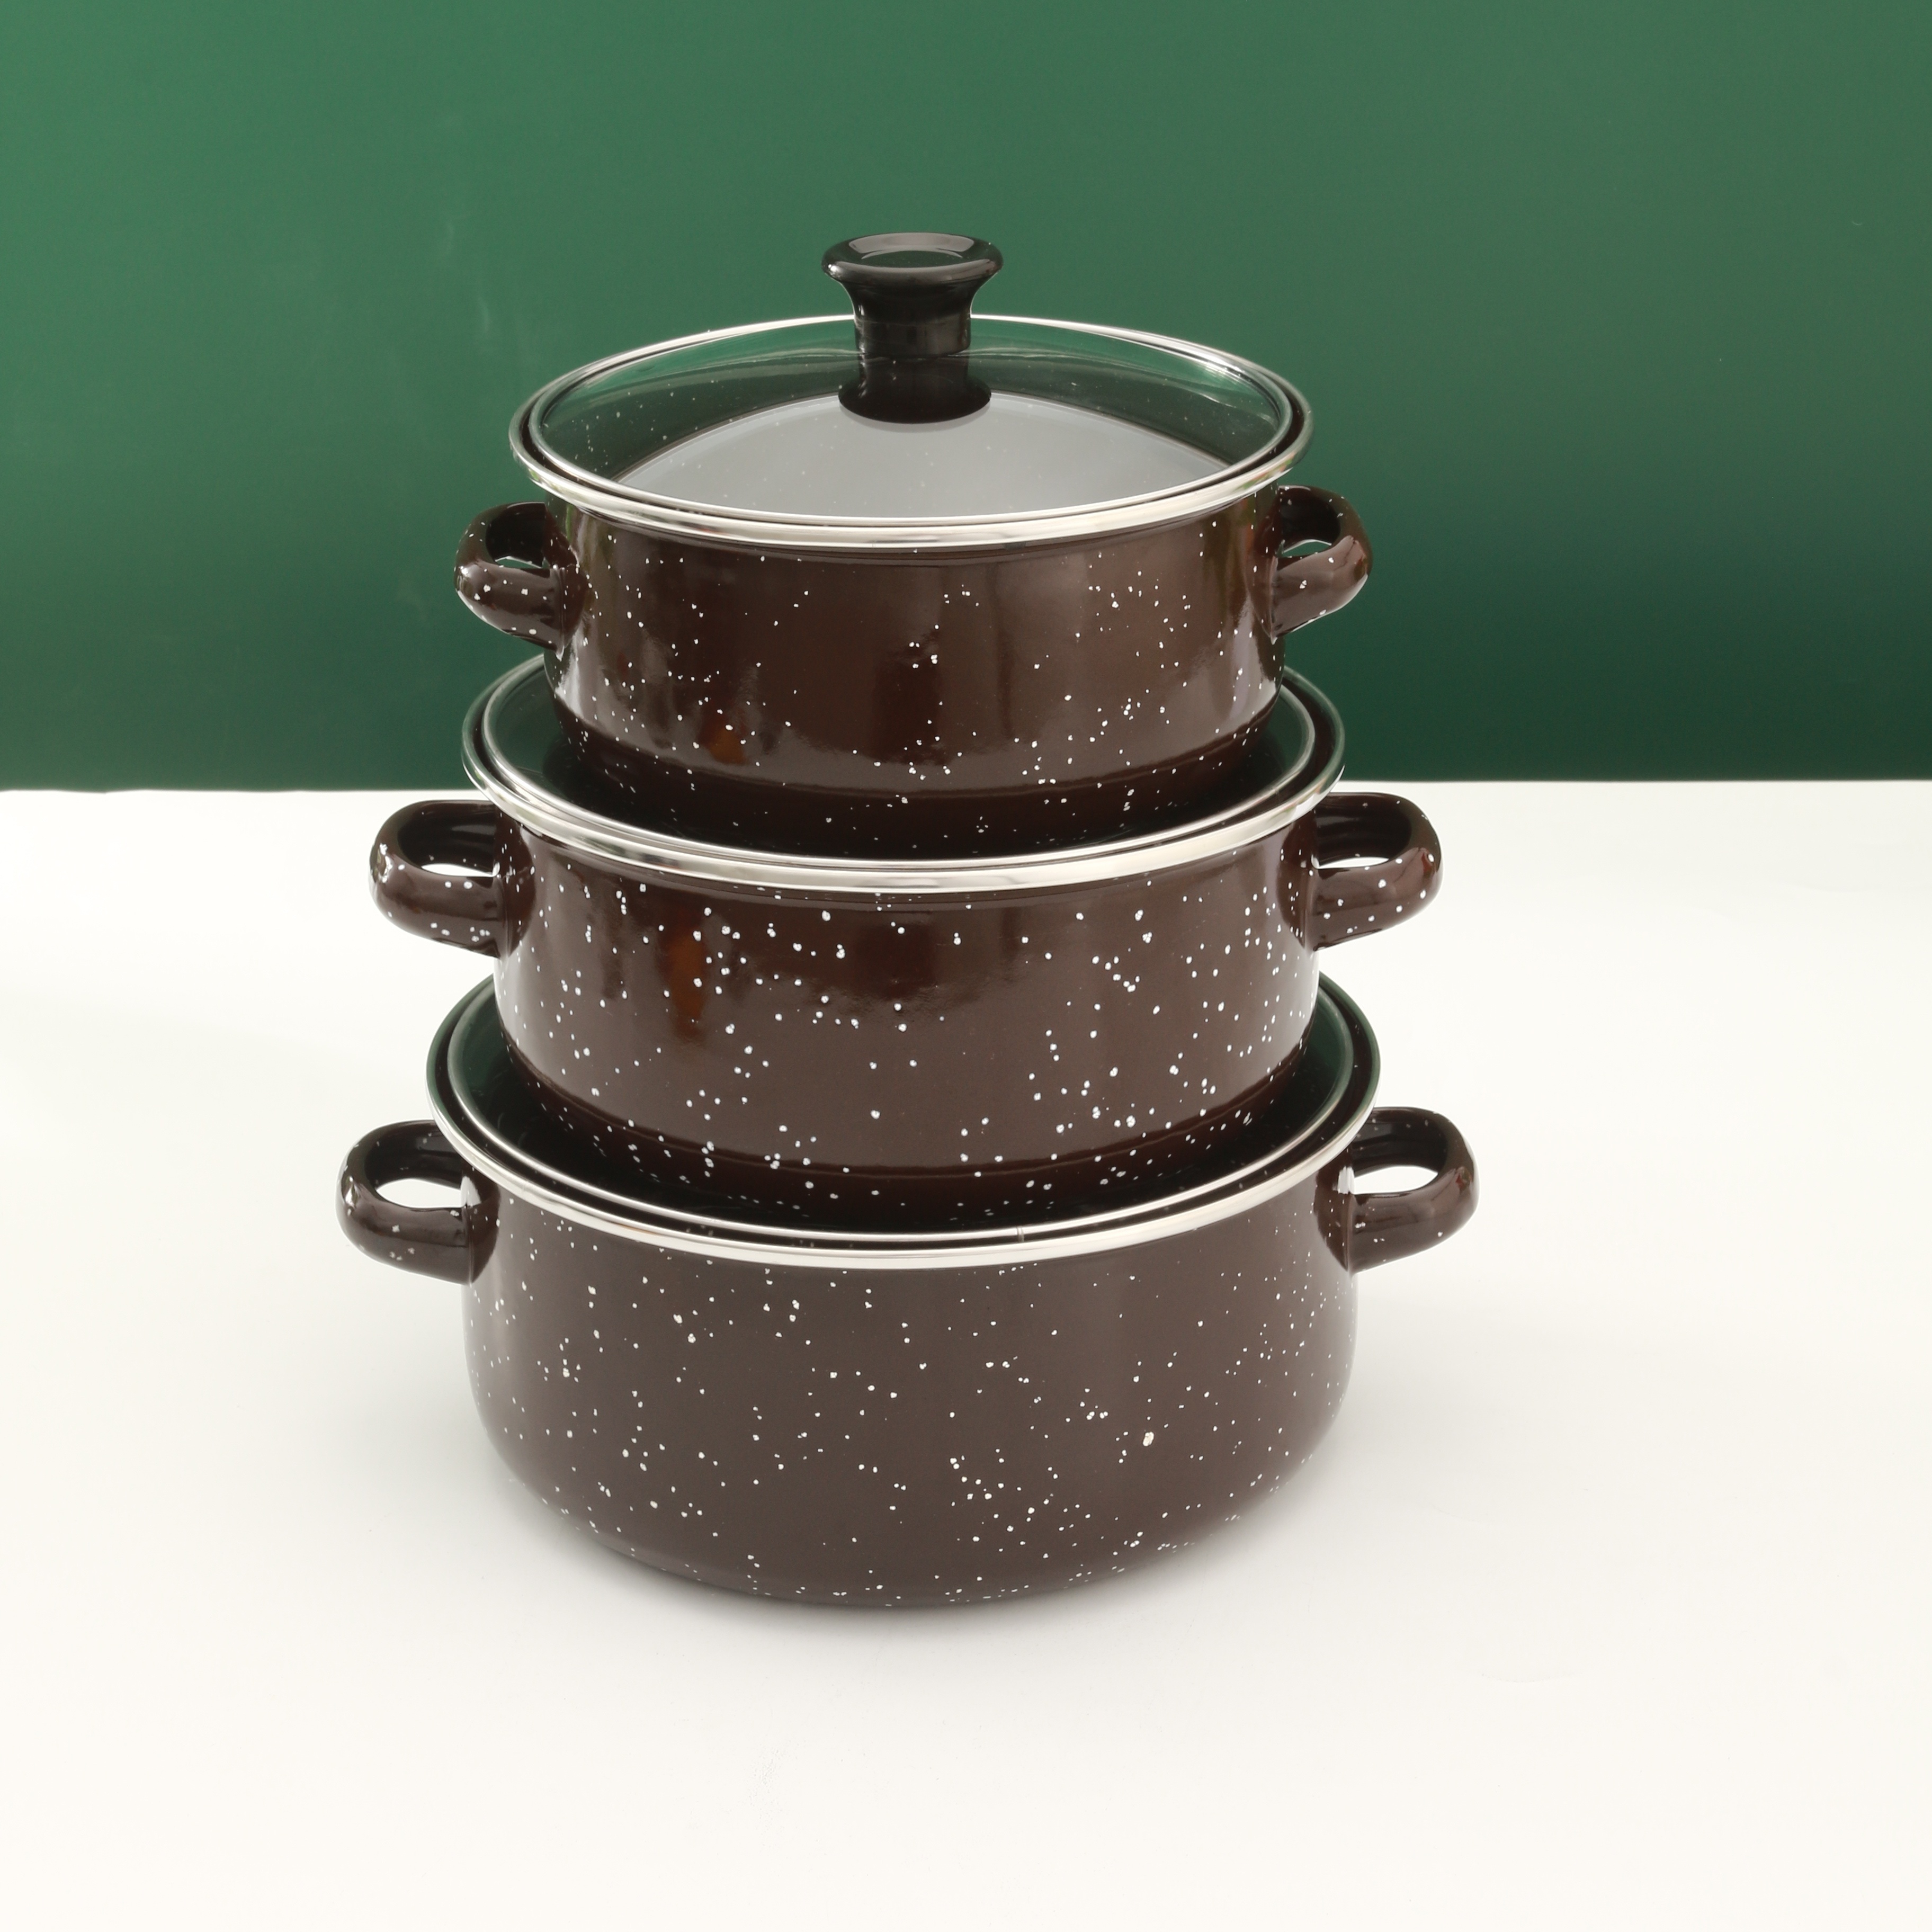 MGKKT Enameled Cast Iron Dutch Oven Set with Lids, 2pcs Cast Iron Pot, 6qt 15qt Enamel Cookware Pot, Red